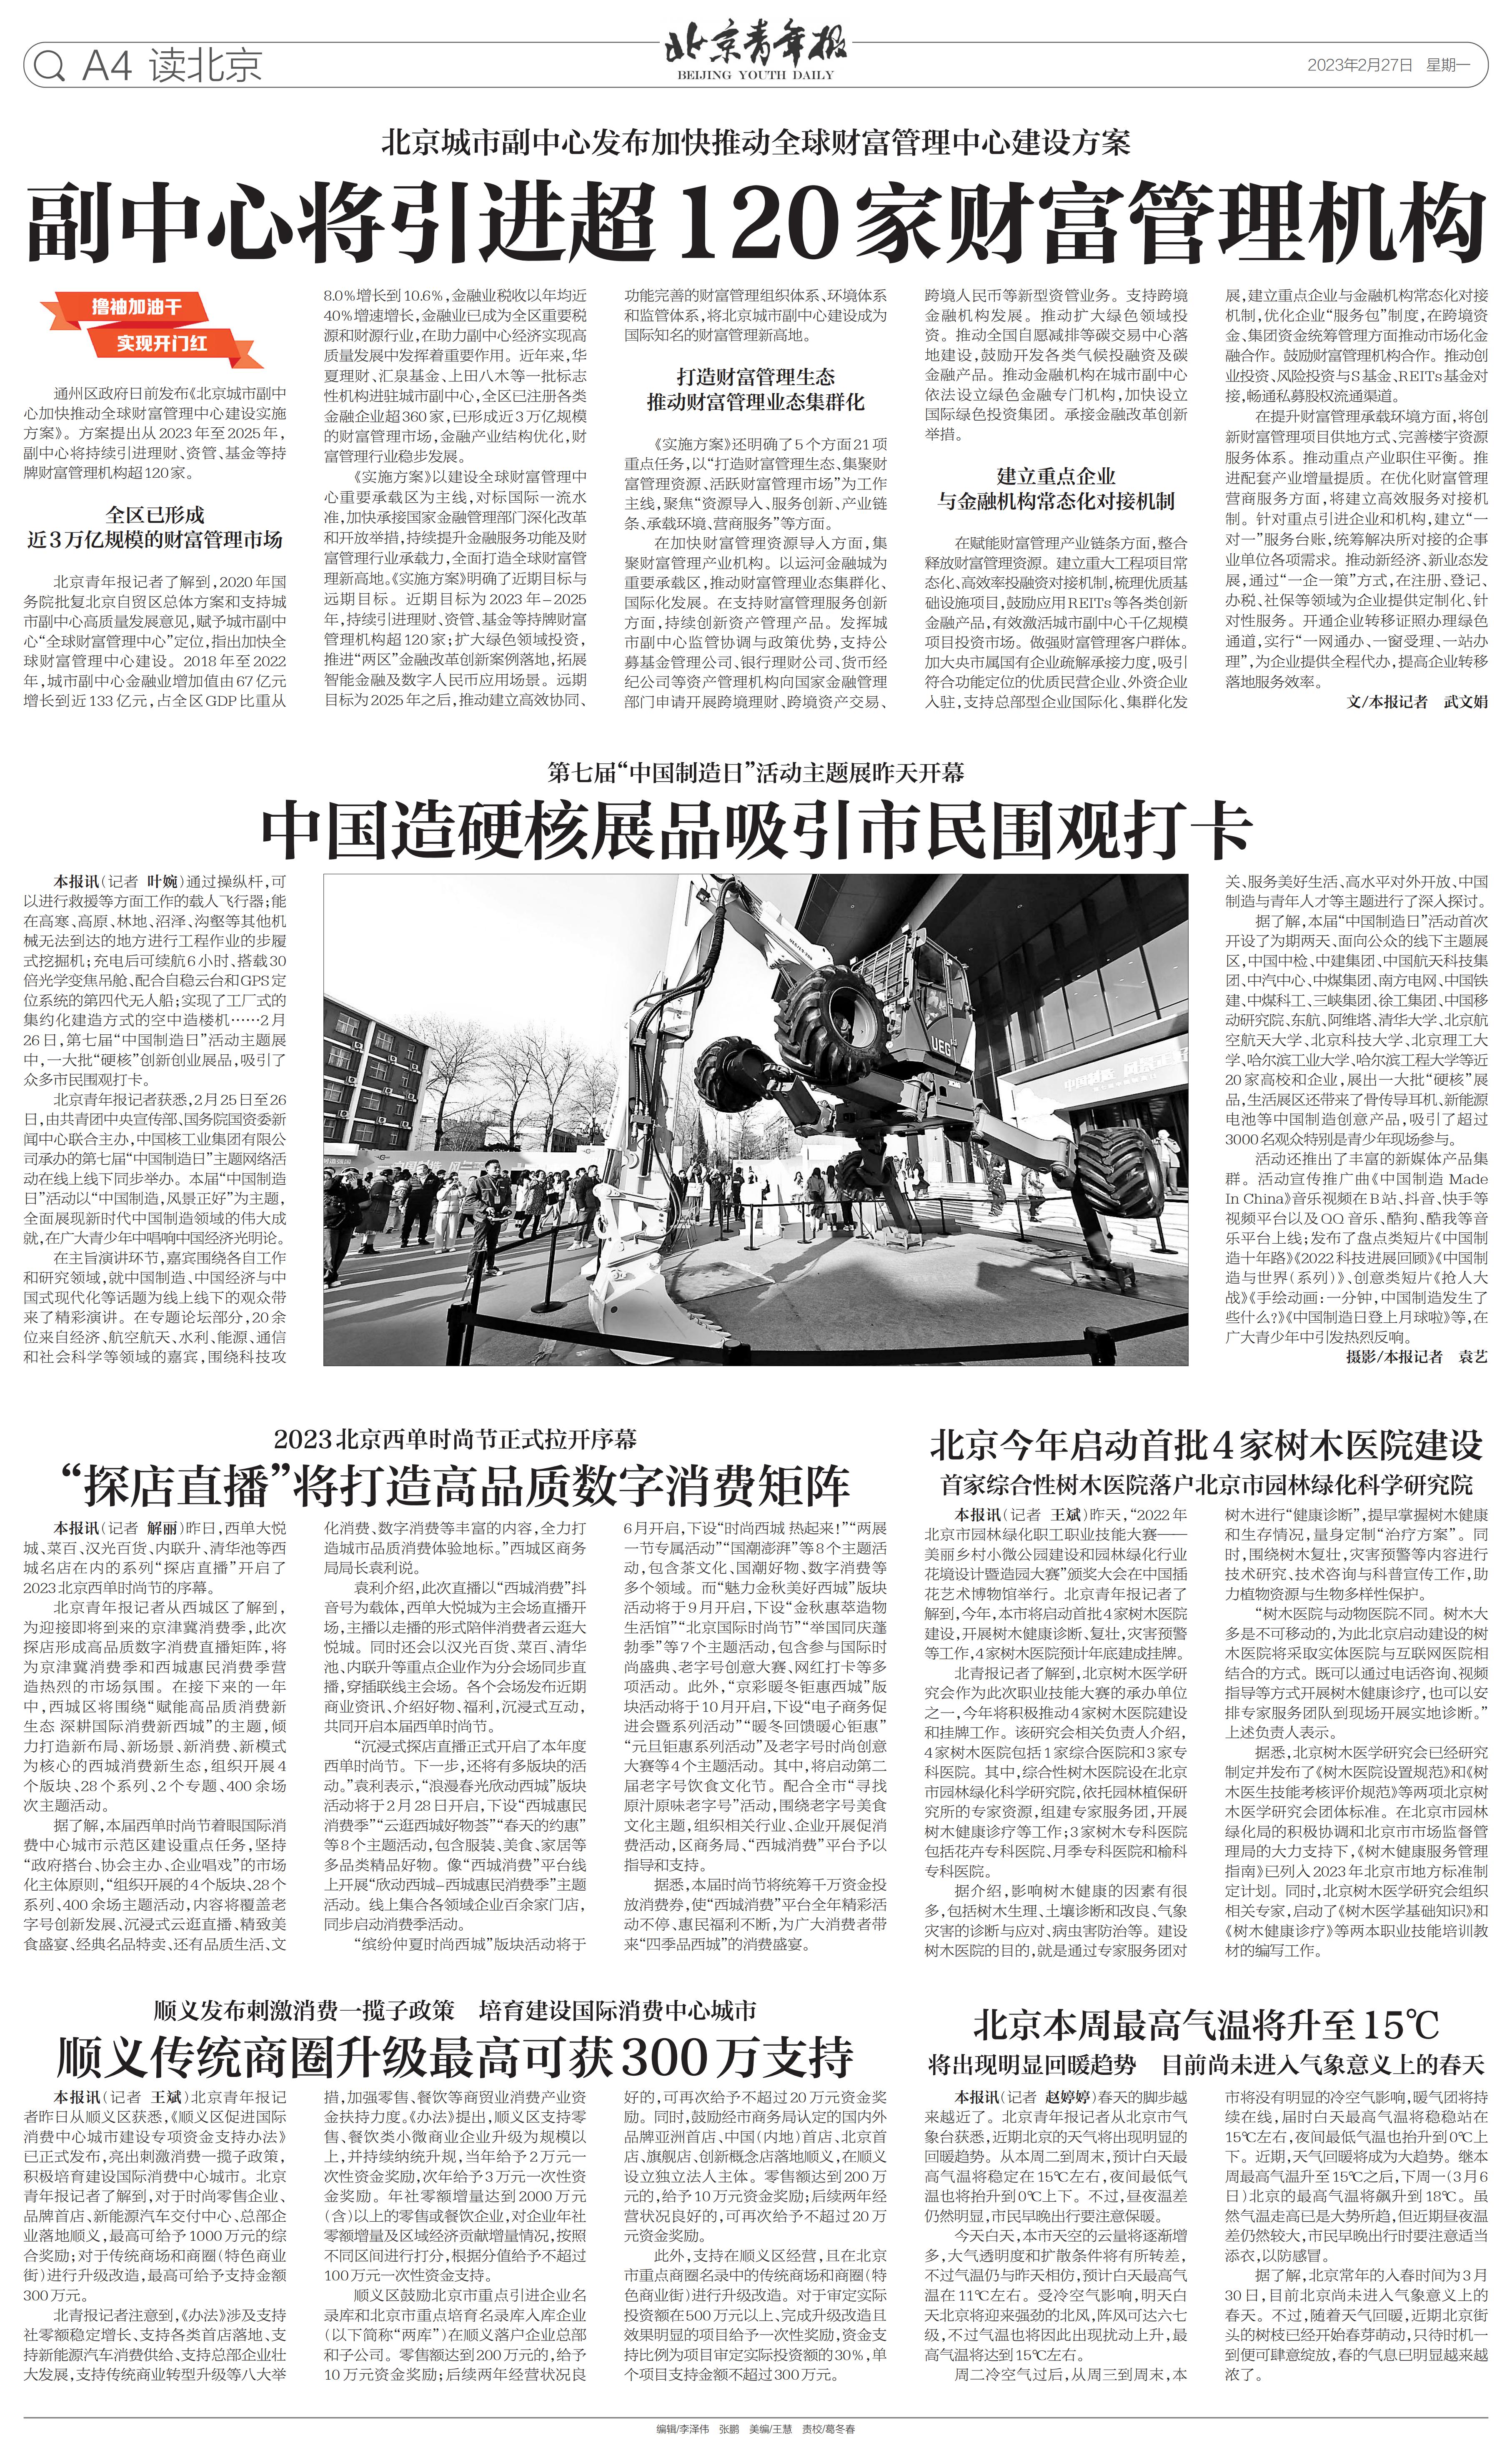 0227北京青年报-北京今年启动首批4家树木医院建设_00.jpg